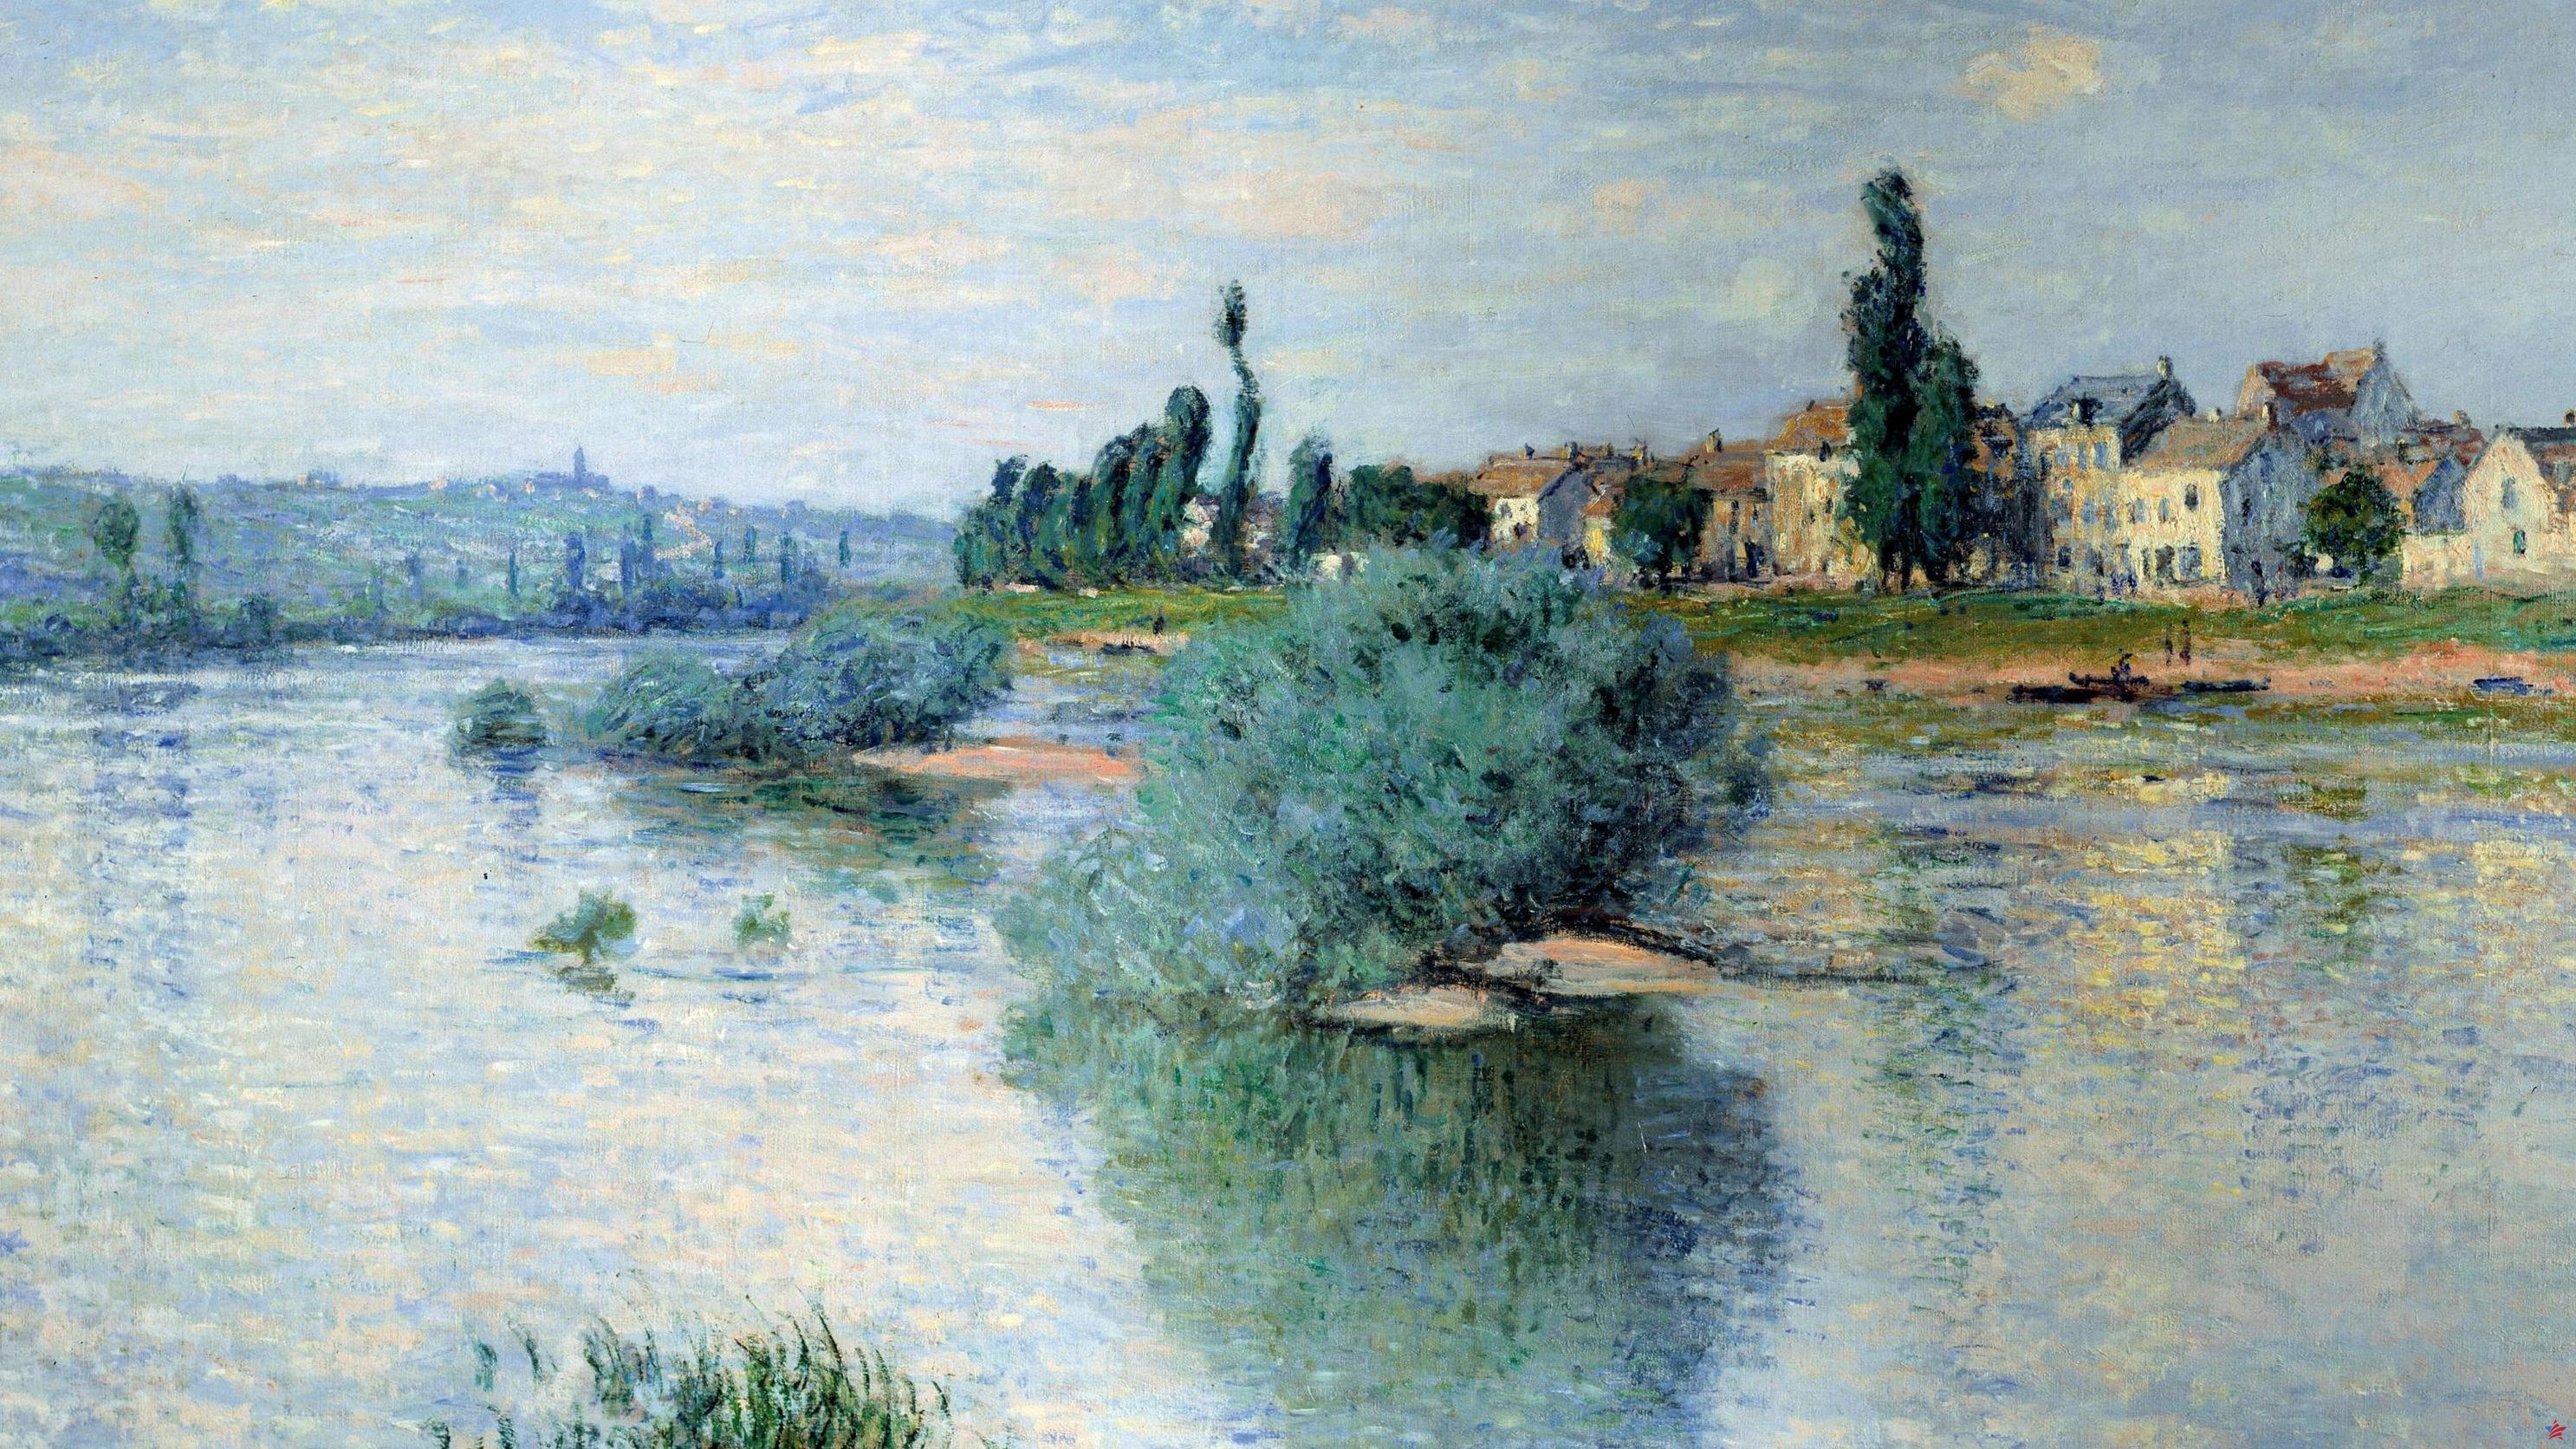 Nueve días de impresionismo: mayo de 1880, Monet abandona el barco